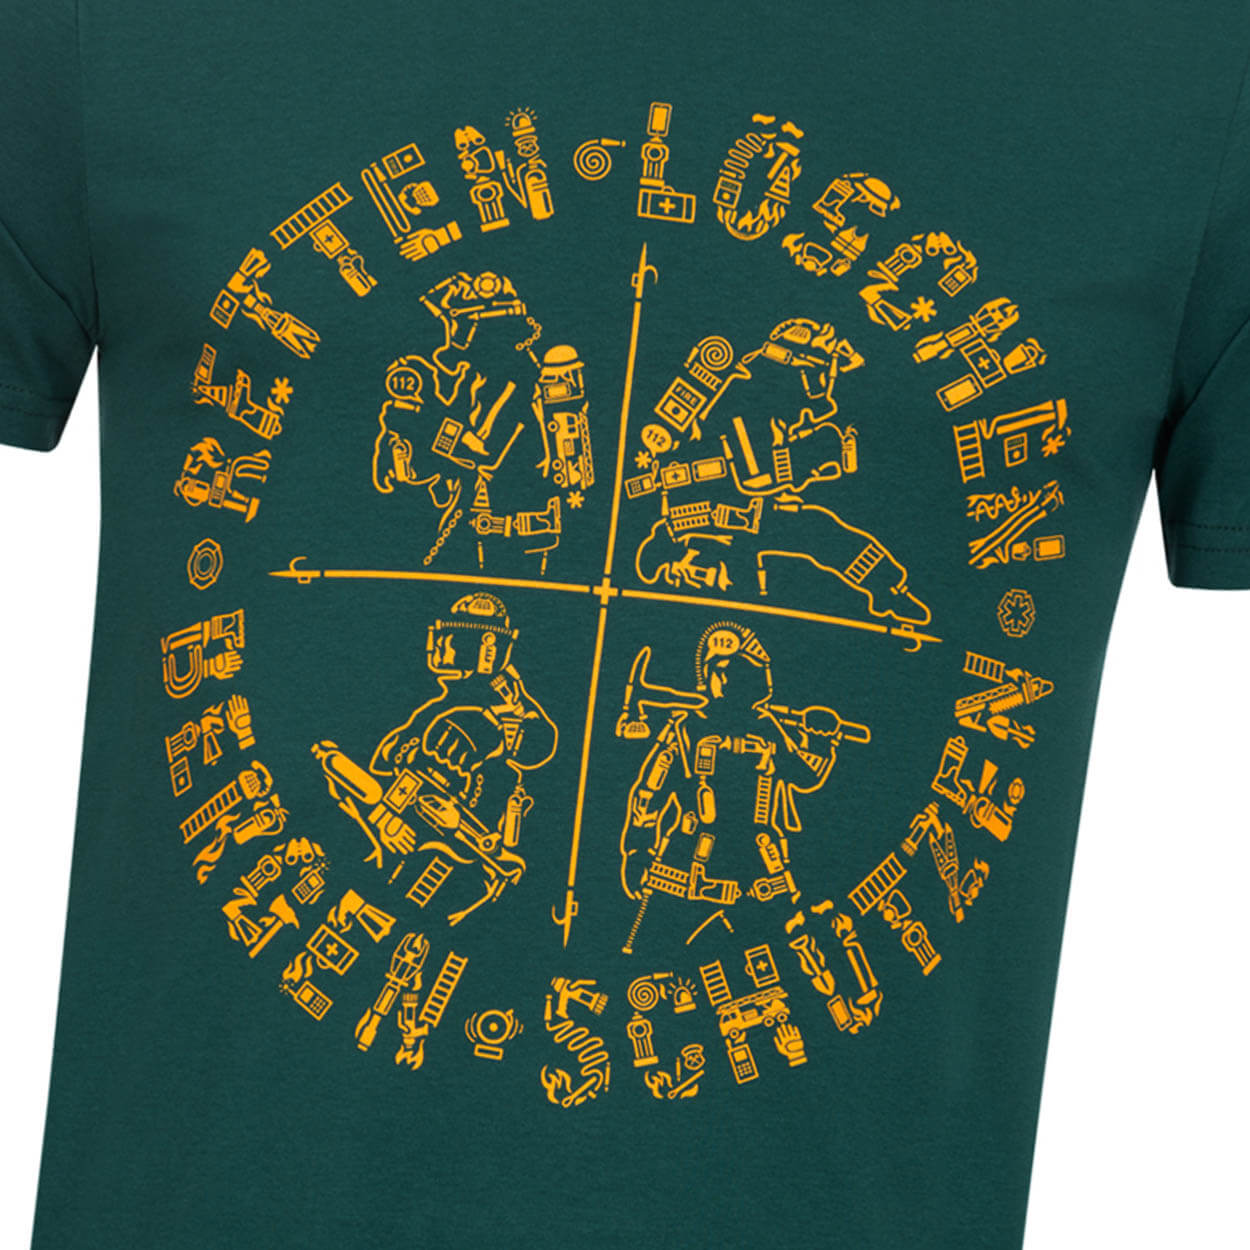 Retten Löschen Bergen Schützen - Männer T-Shirt green